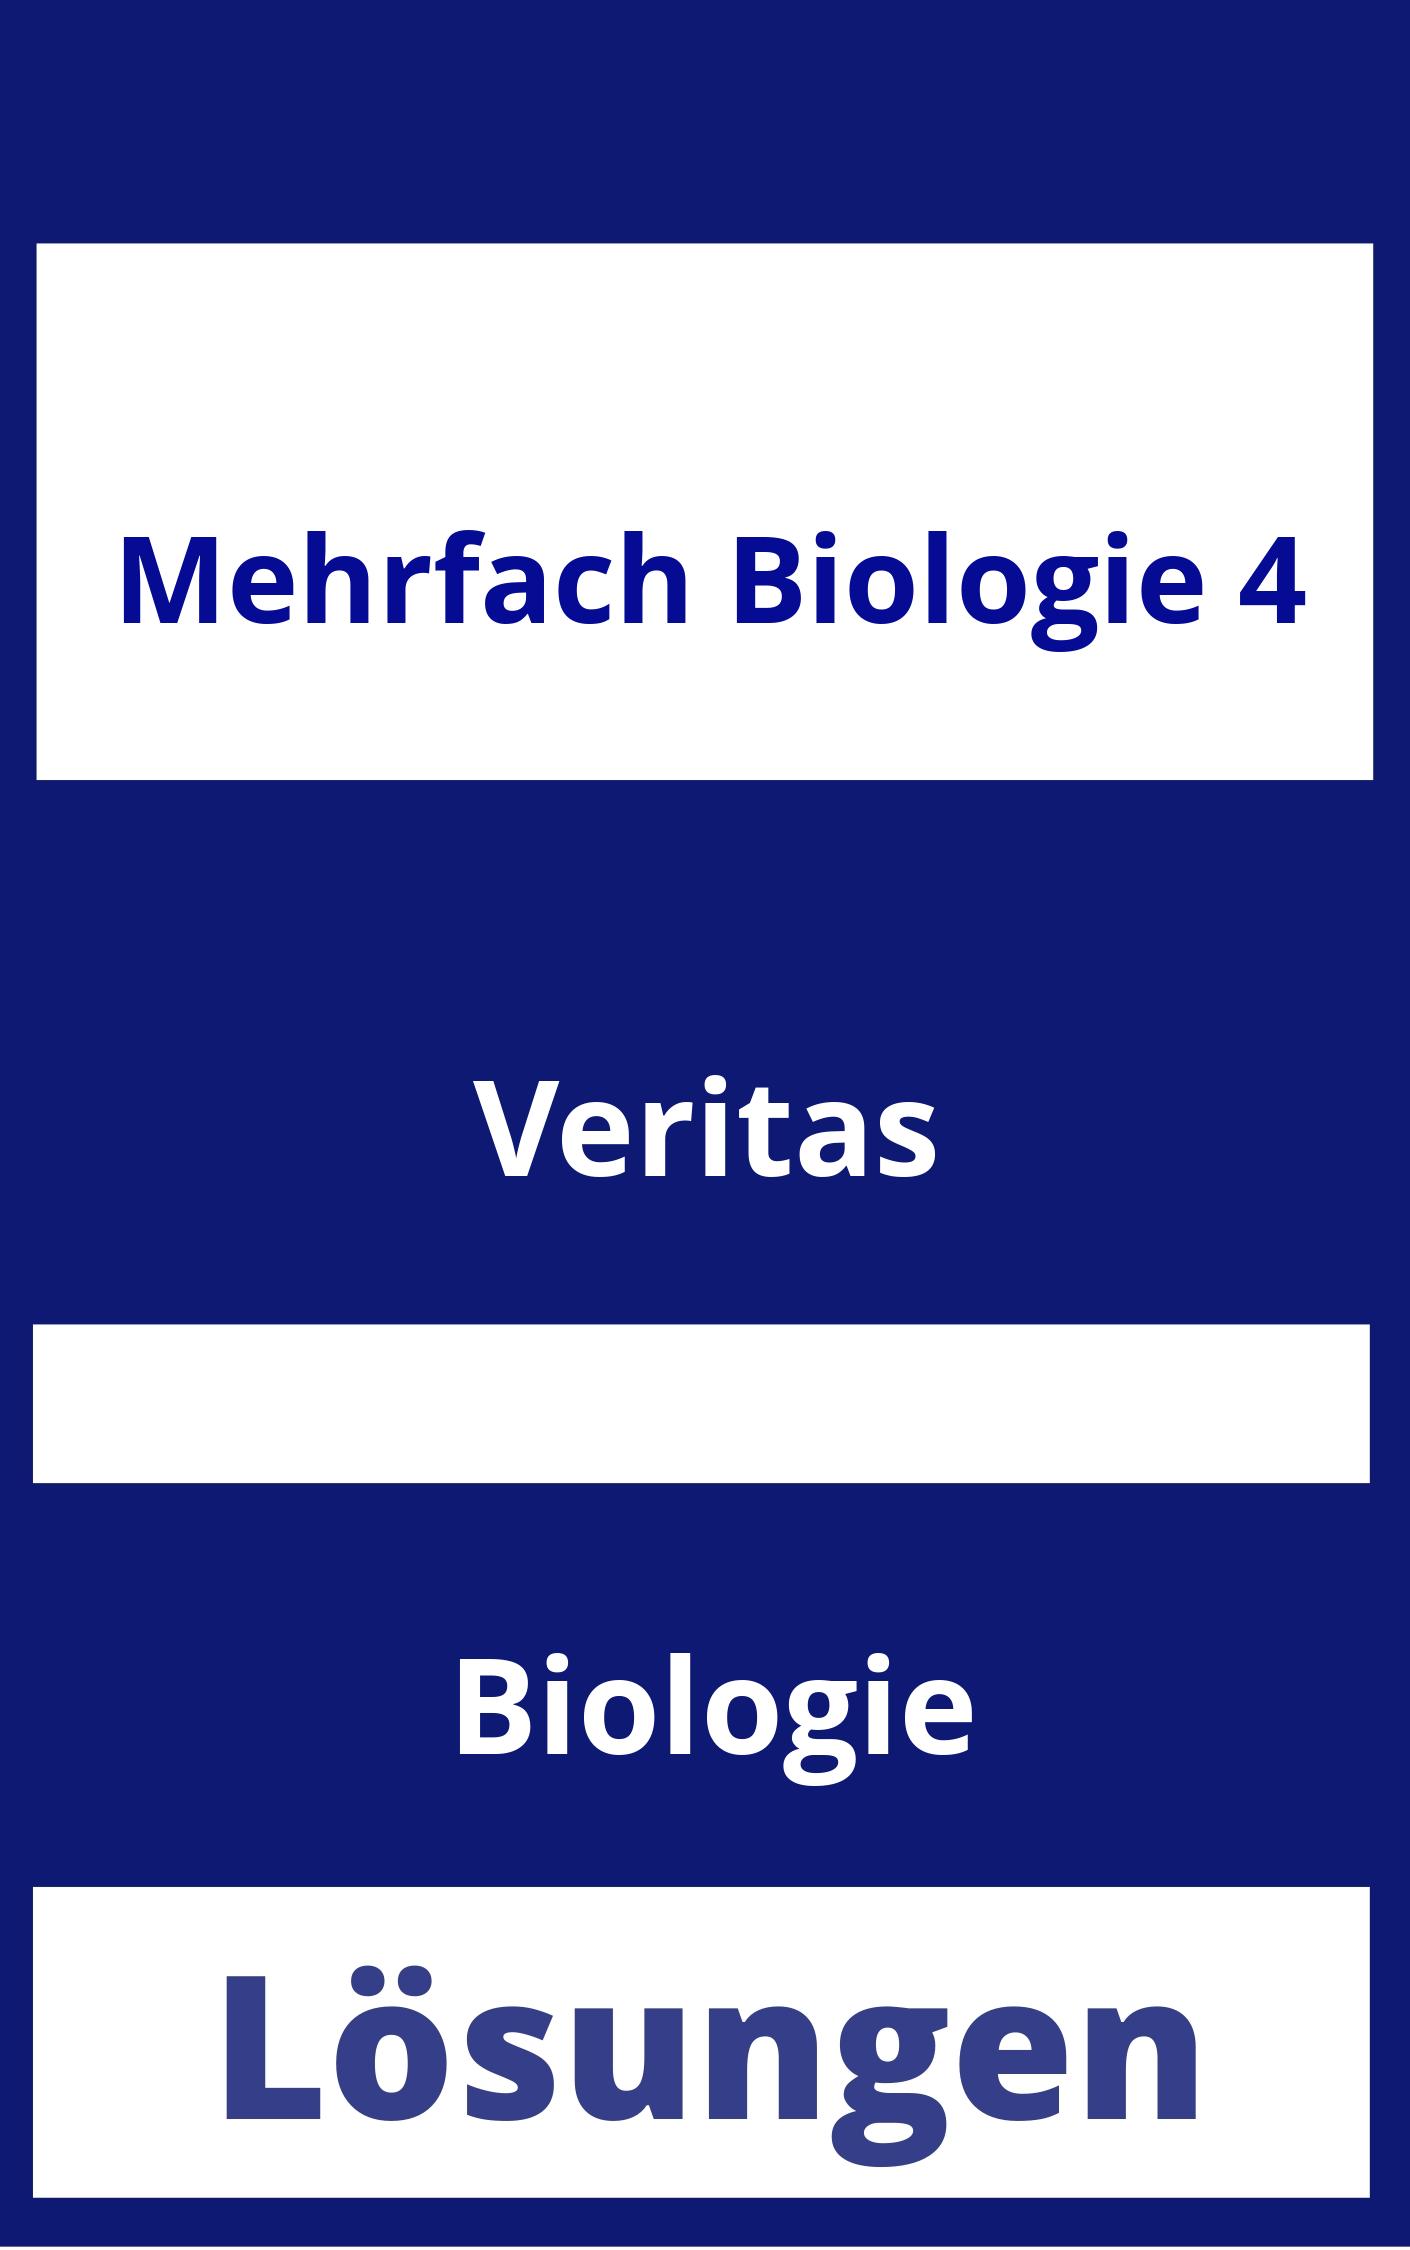 MEHRfach Biologie 4